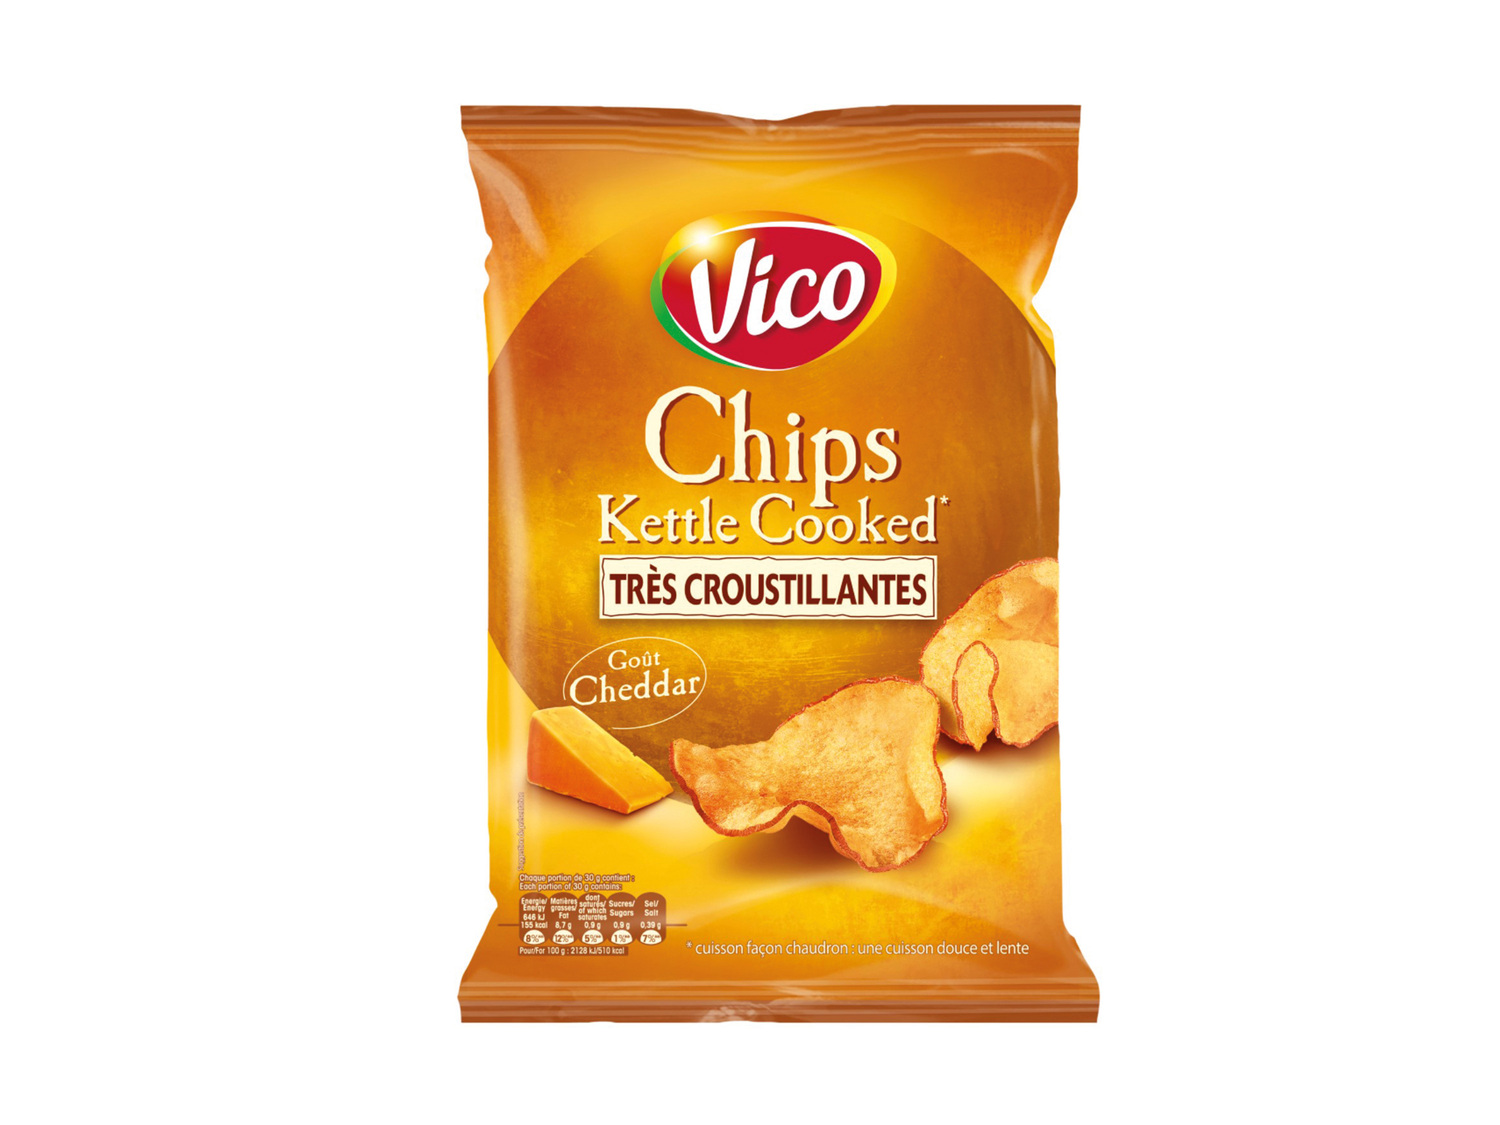 Vico Chips Kettle Cooked , le prix 1.25 € 
- Au choix: sel de mer, gaufrette ...